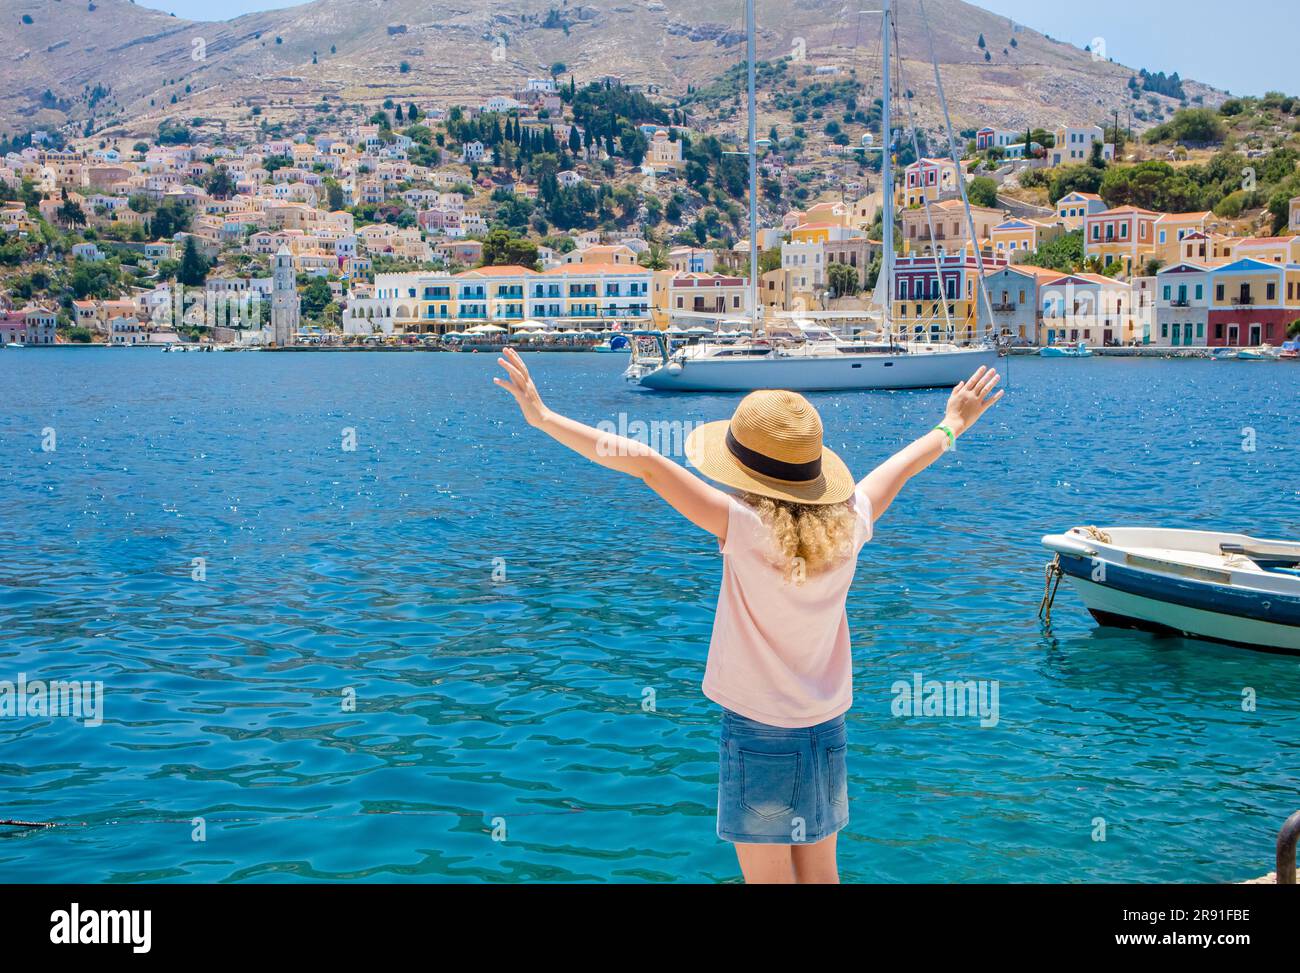 Süßes blondes Mädchen im Urlaub in Griechenland. Symi auch bekannt als Syme oder Simi, griechische Insel im Hintergrund. Symi Hauptstadt mit bunten Gebäuden. Stockfoto